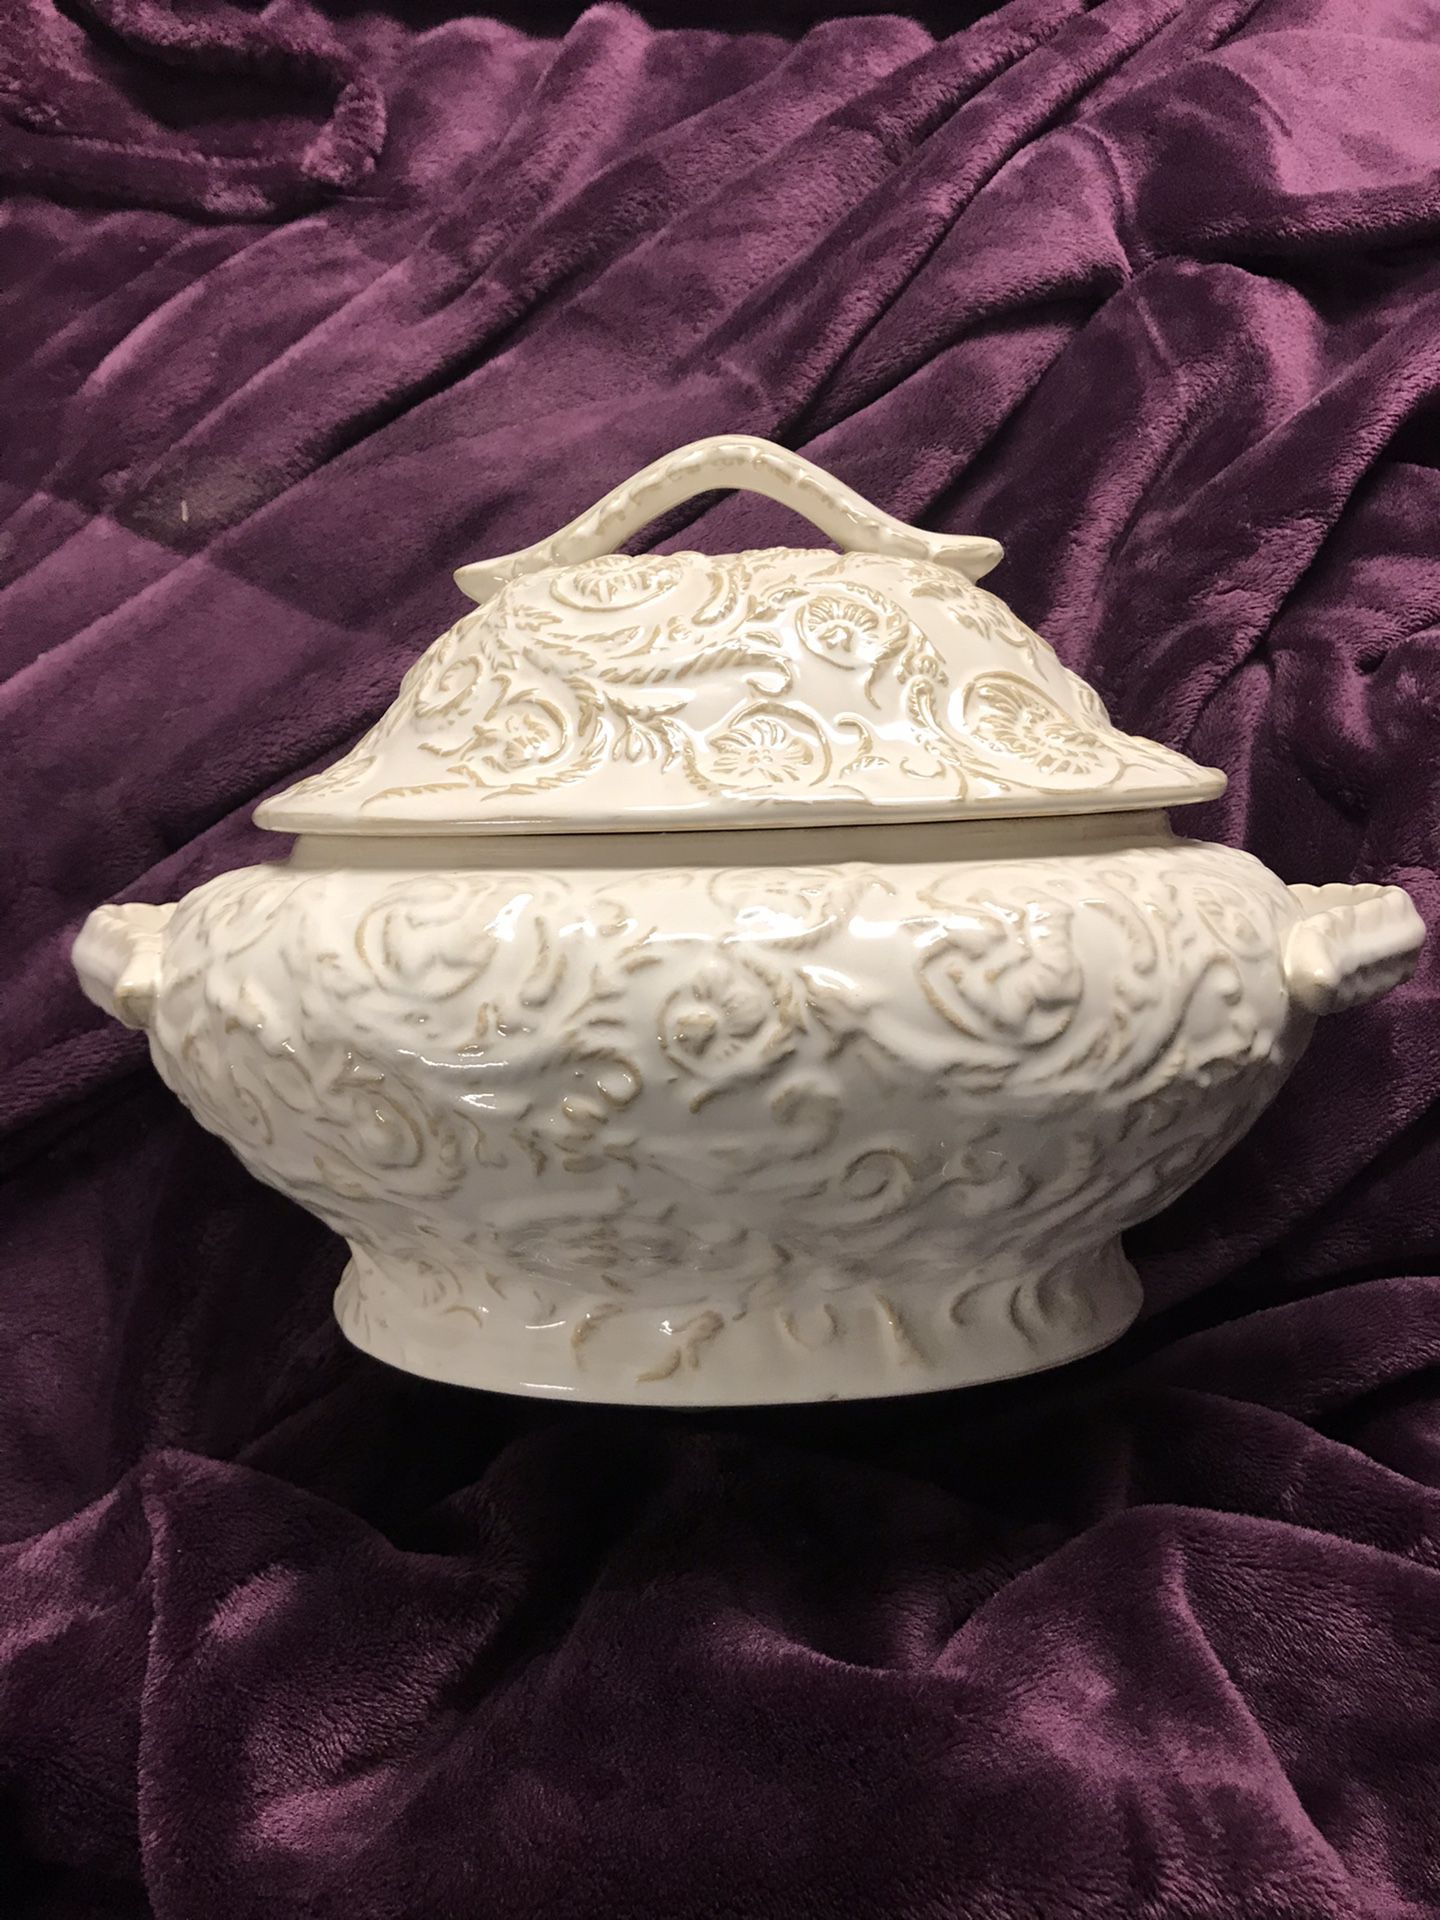 Decorative soup bowl